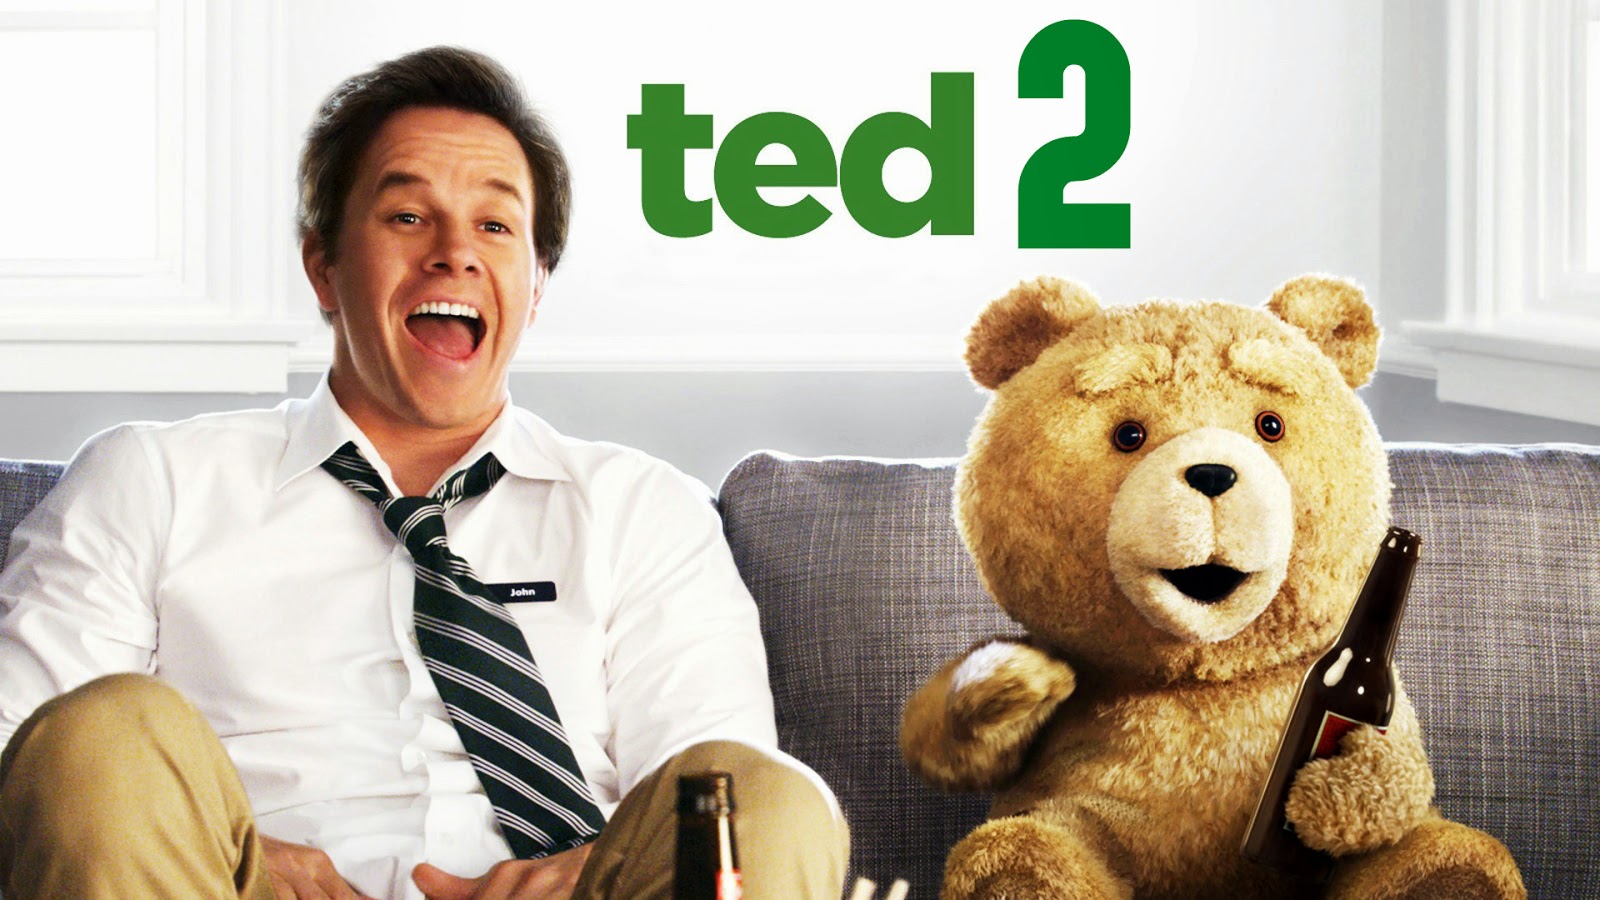 Vuelve el oso animado, Ted 2